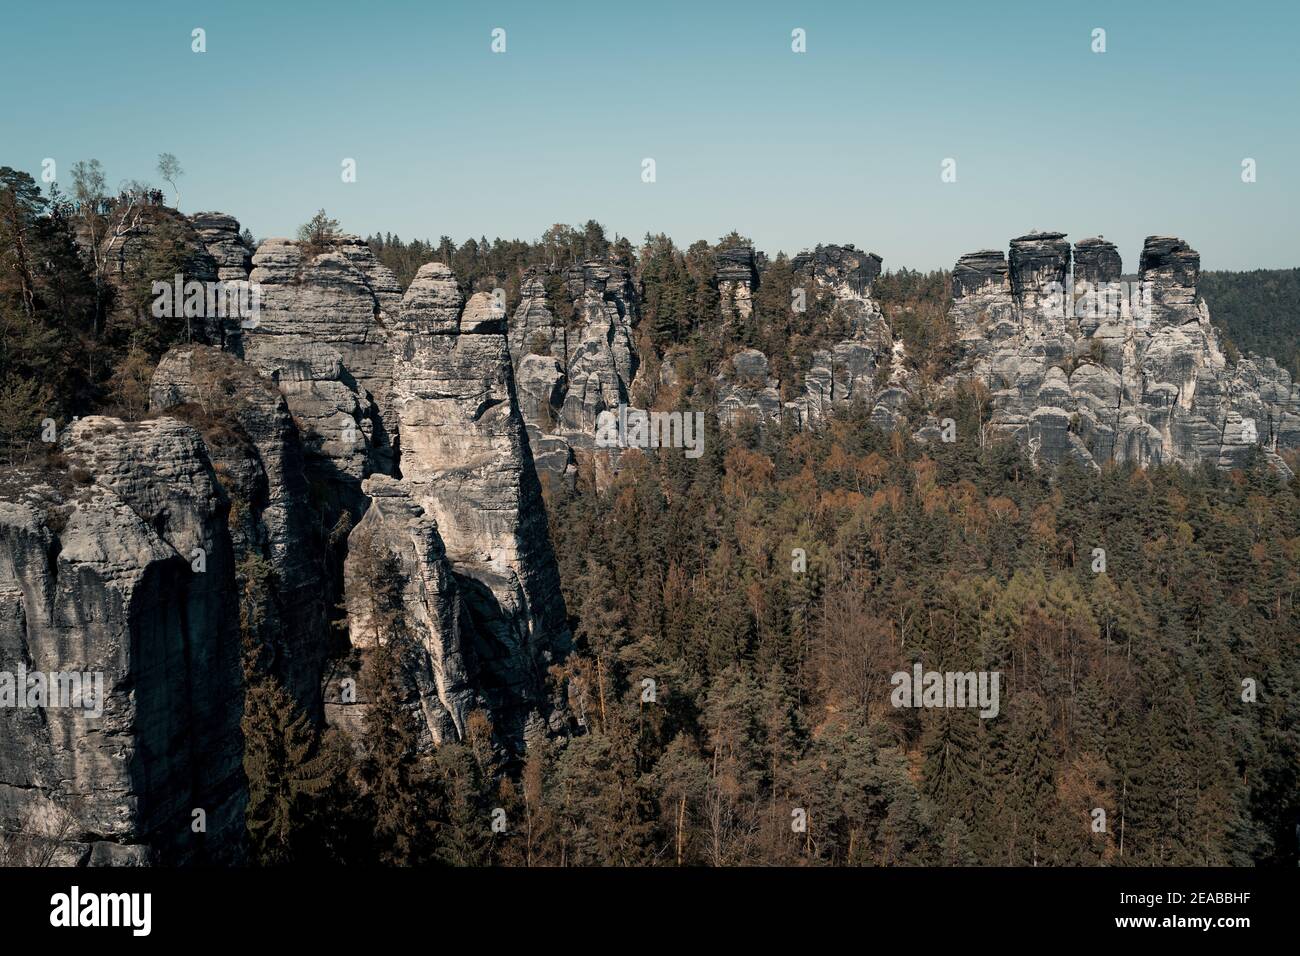 Deutschland, Sachsen, Sächsische Schweiz, Bäume, Sommer, Sonne, Wanderung, Felsen Stock Photo